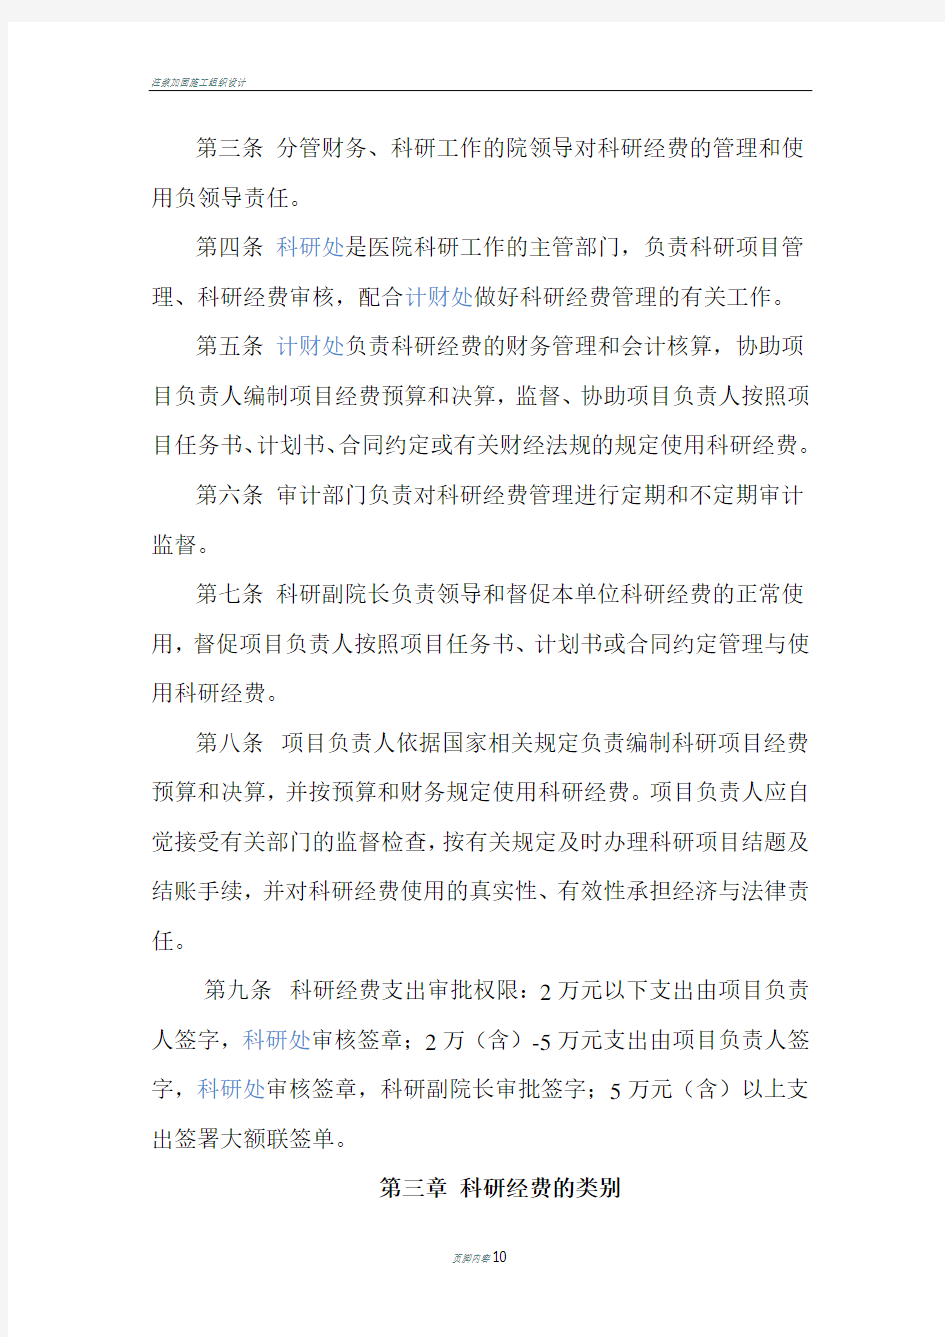 北京大学第六医院科研经费管理办法(修订)